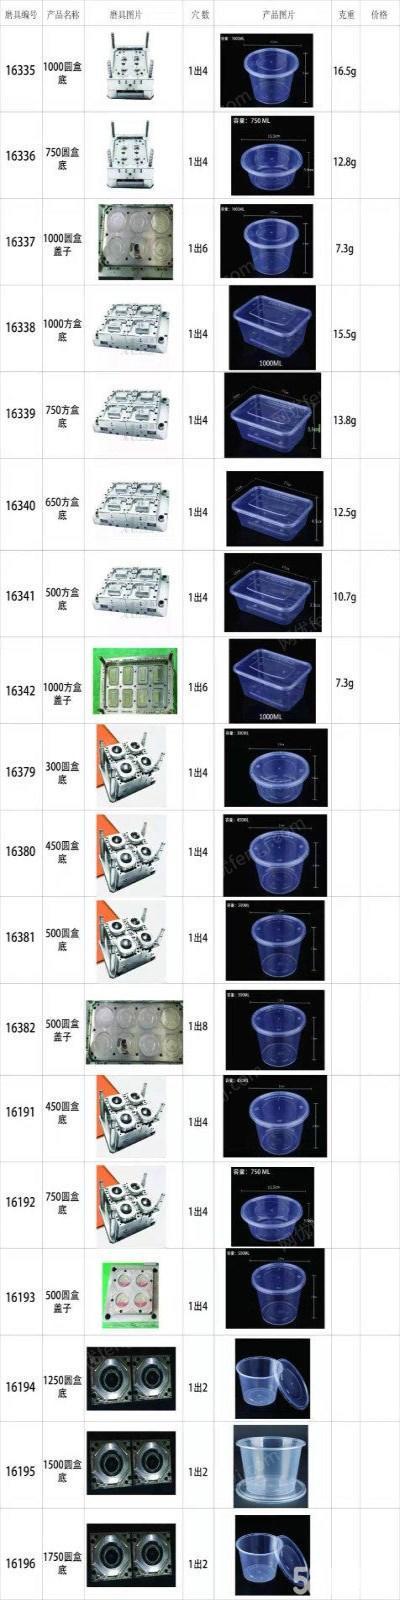 重庆江北区 出售注塑机70余台，现有300-1000ml圆盒、方盒一批模具转让